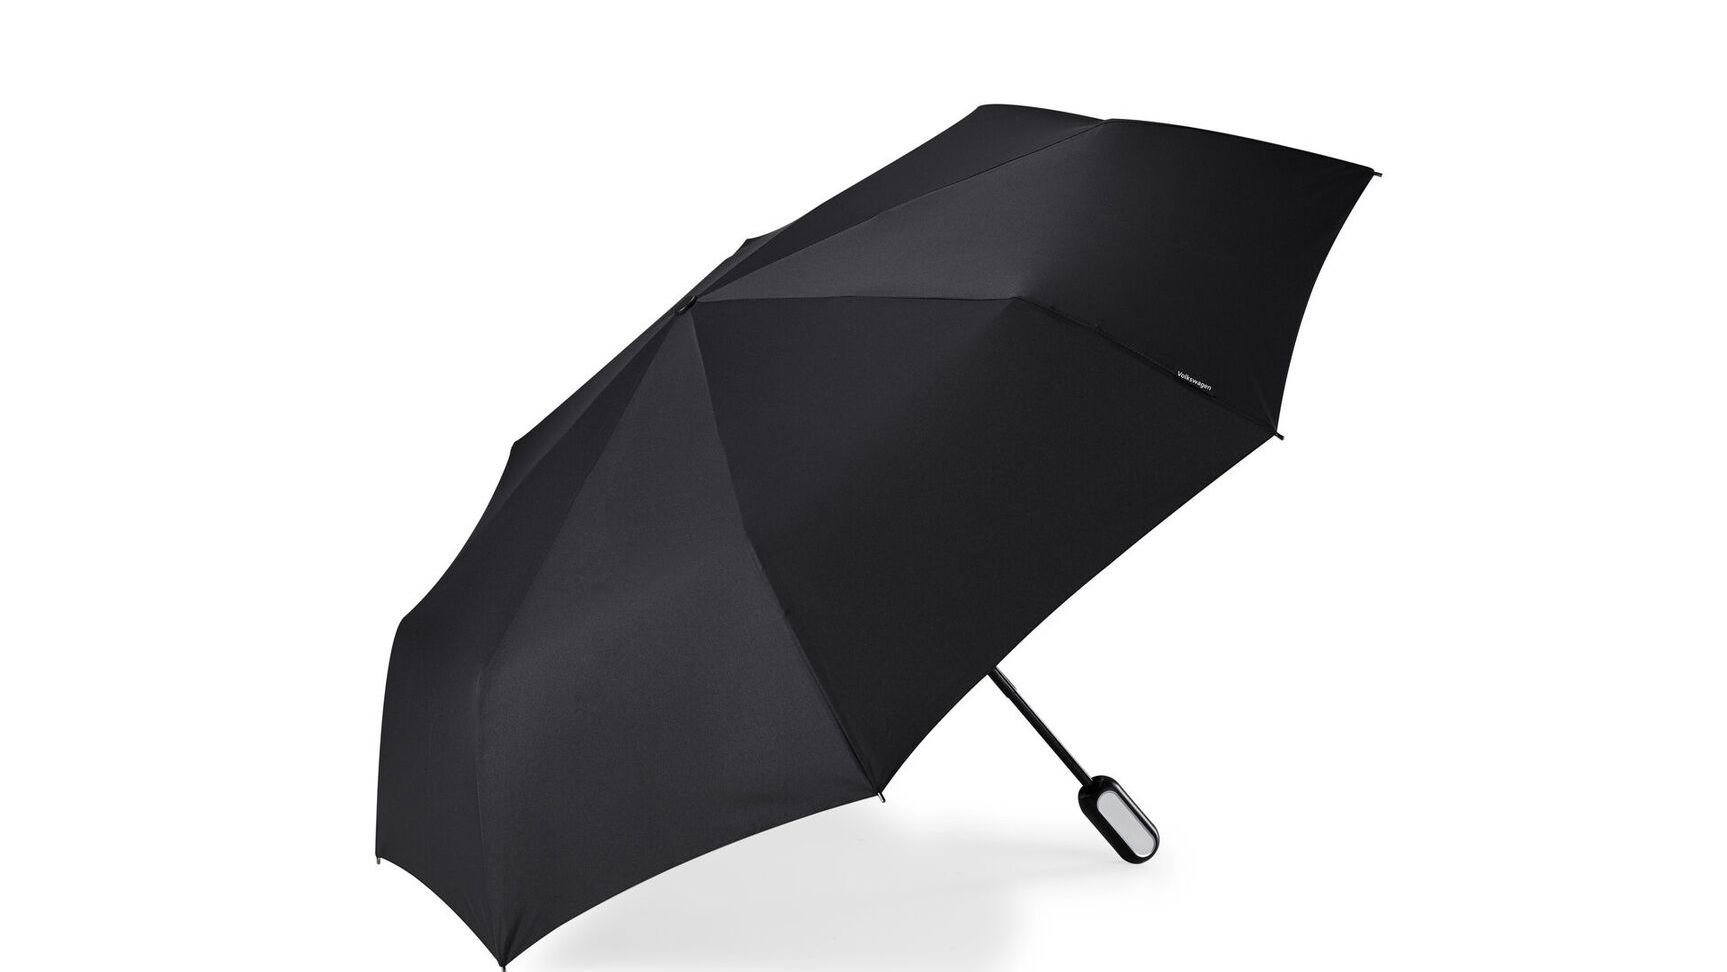 VW Regenschirm dunkel